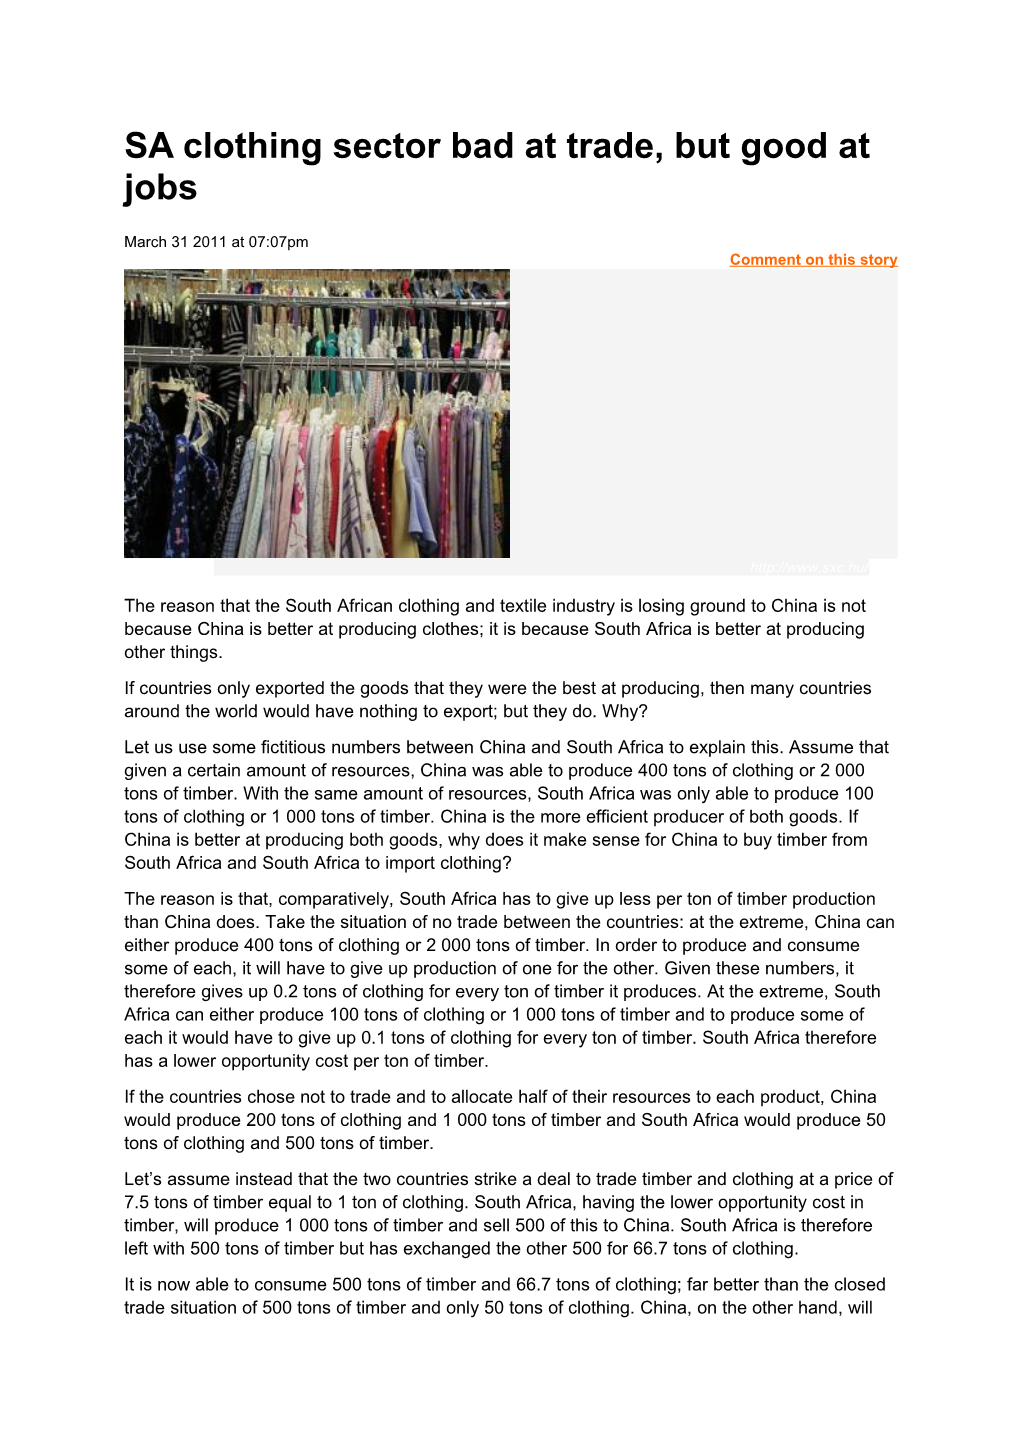 SA Clothing Sector Bad at Trade, but Good at Jobs